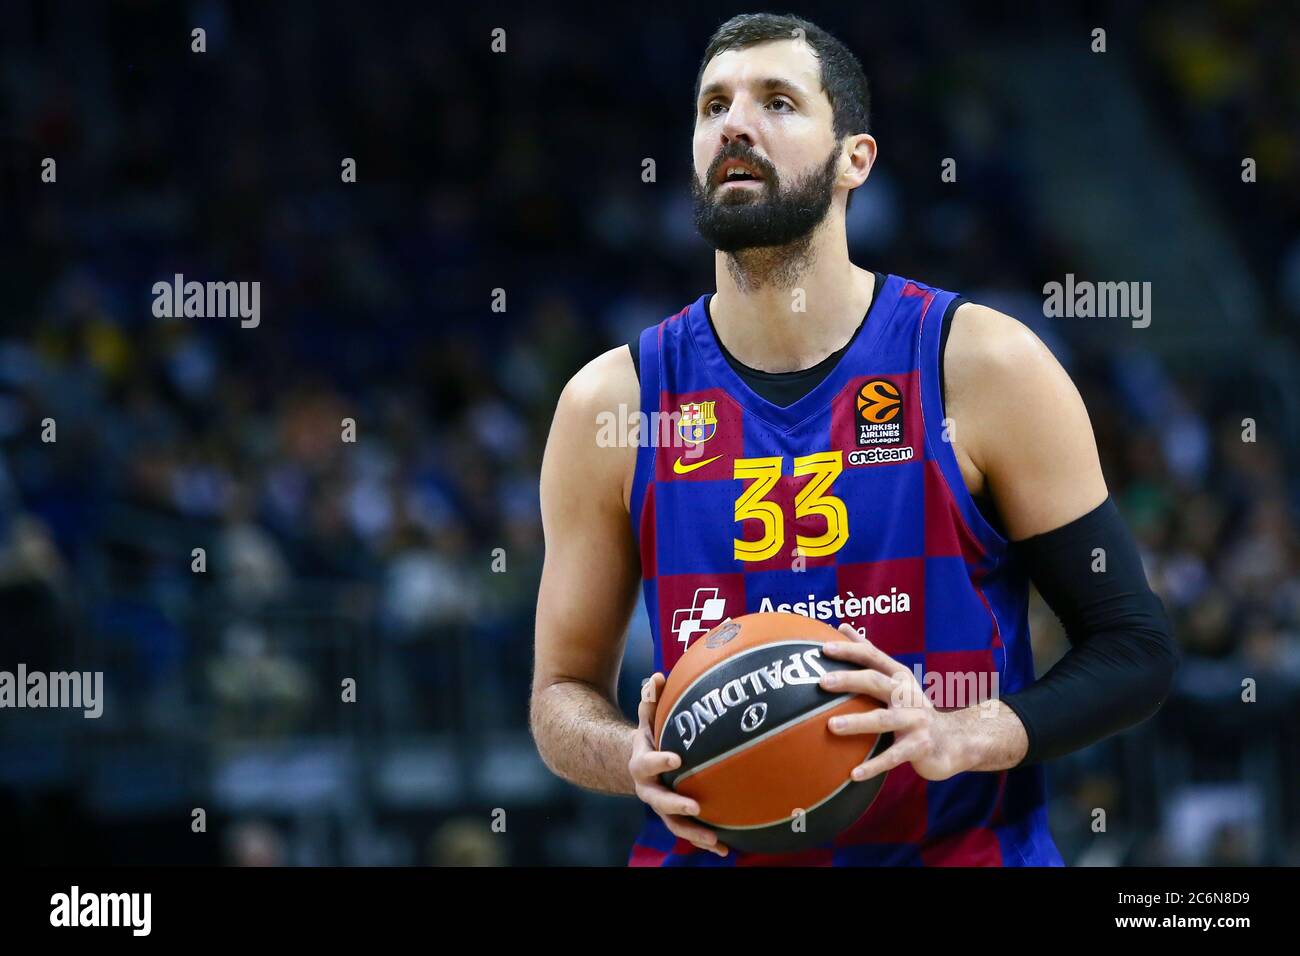 Berlin, Allemagne, 04 mars 2020: Joueur de basket-ball Nikola Mirotic du FC Barcelona pendant le match de basket-ball de l'Euroligue Banque D'Images